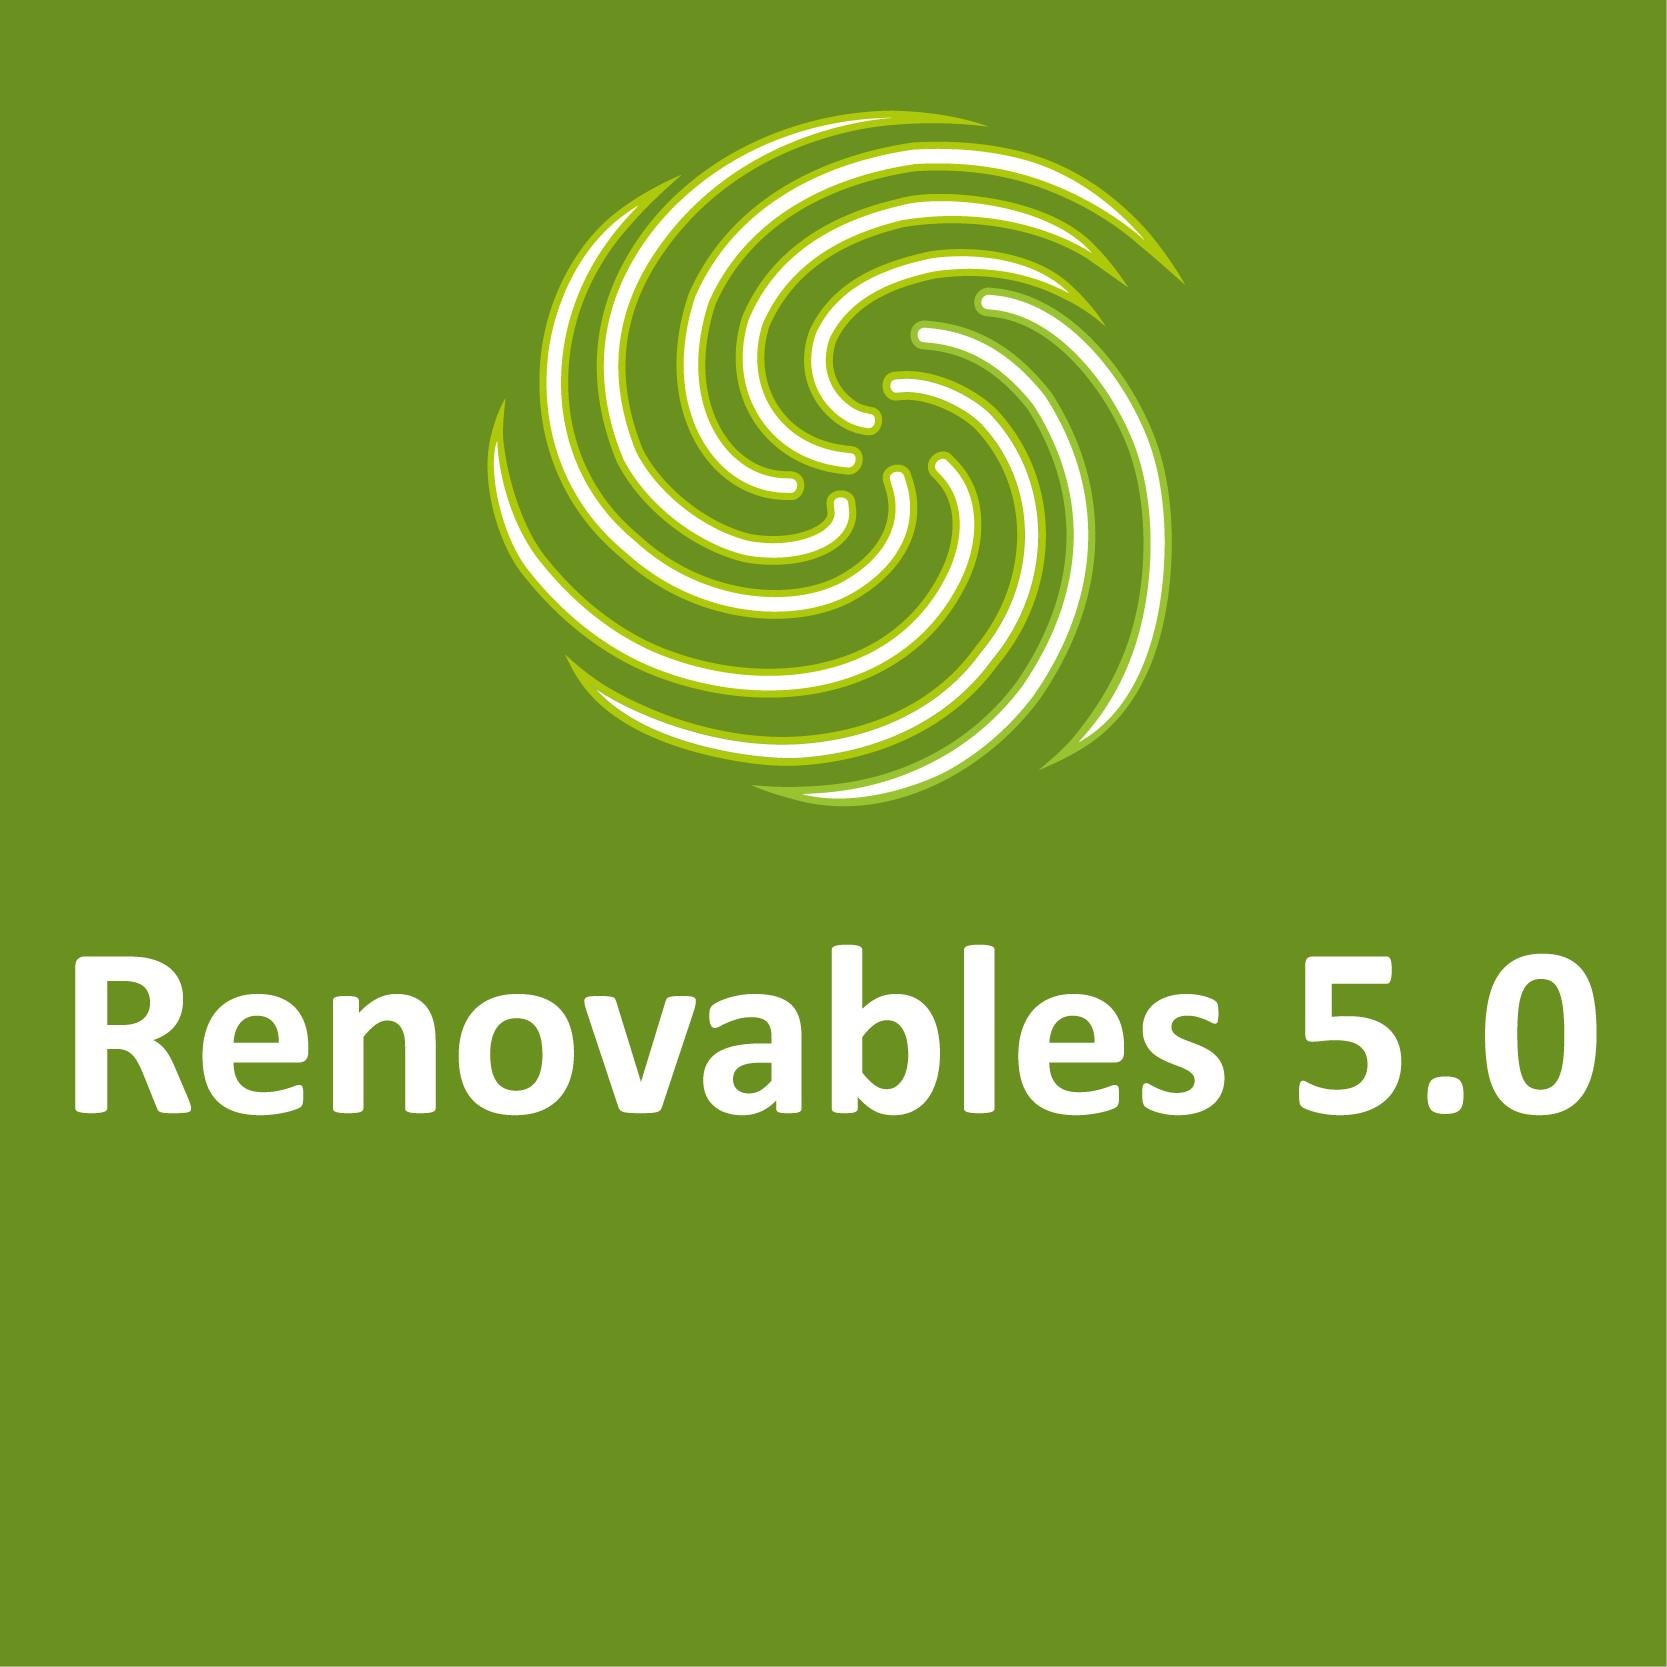 Desde Renovables 5.0 queremos acompañarte y asesorarte en este cambio hacia las energías renovables y el autoconsumo☀️